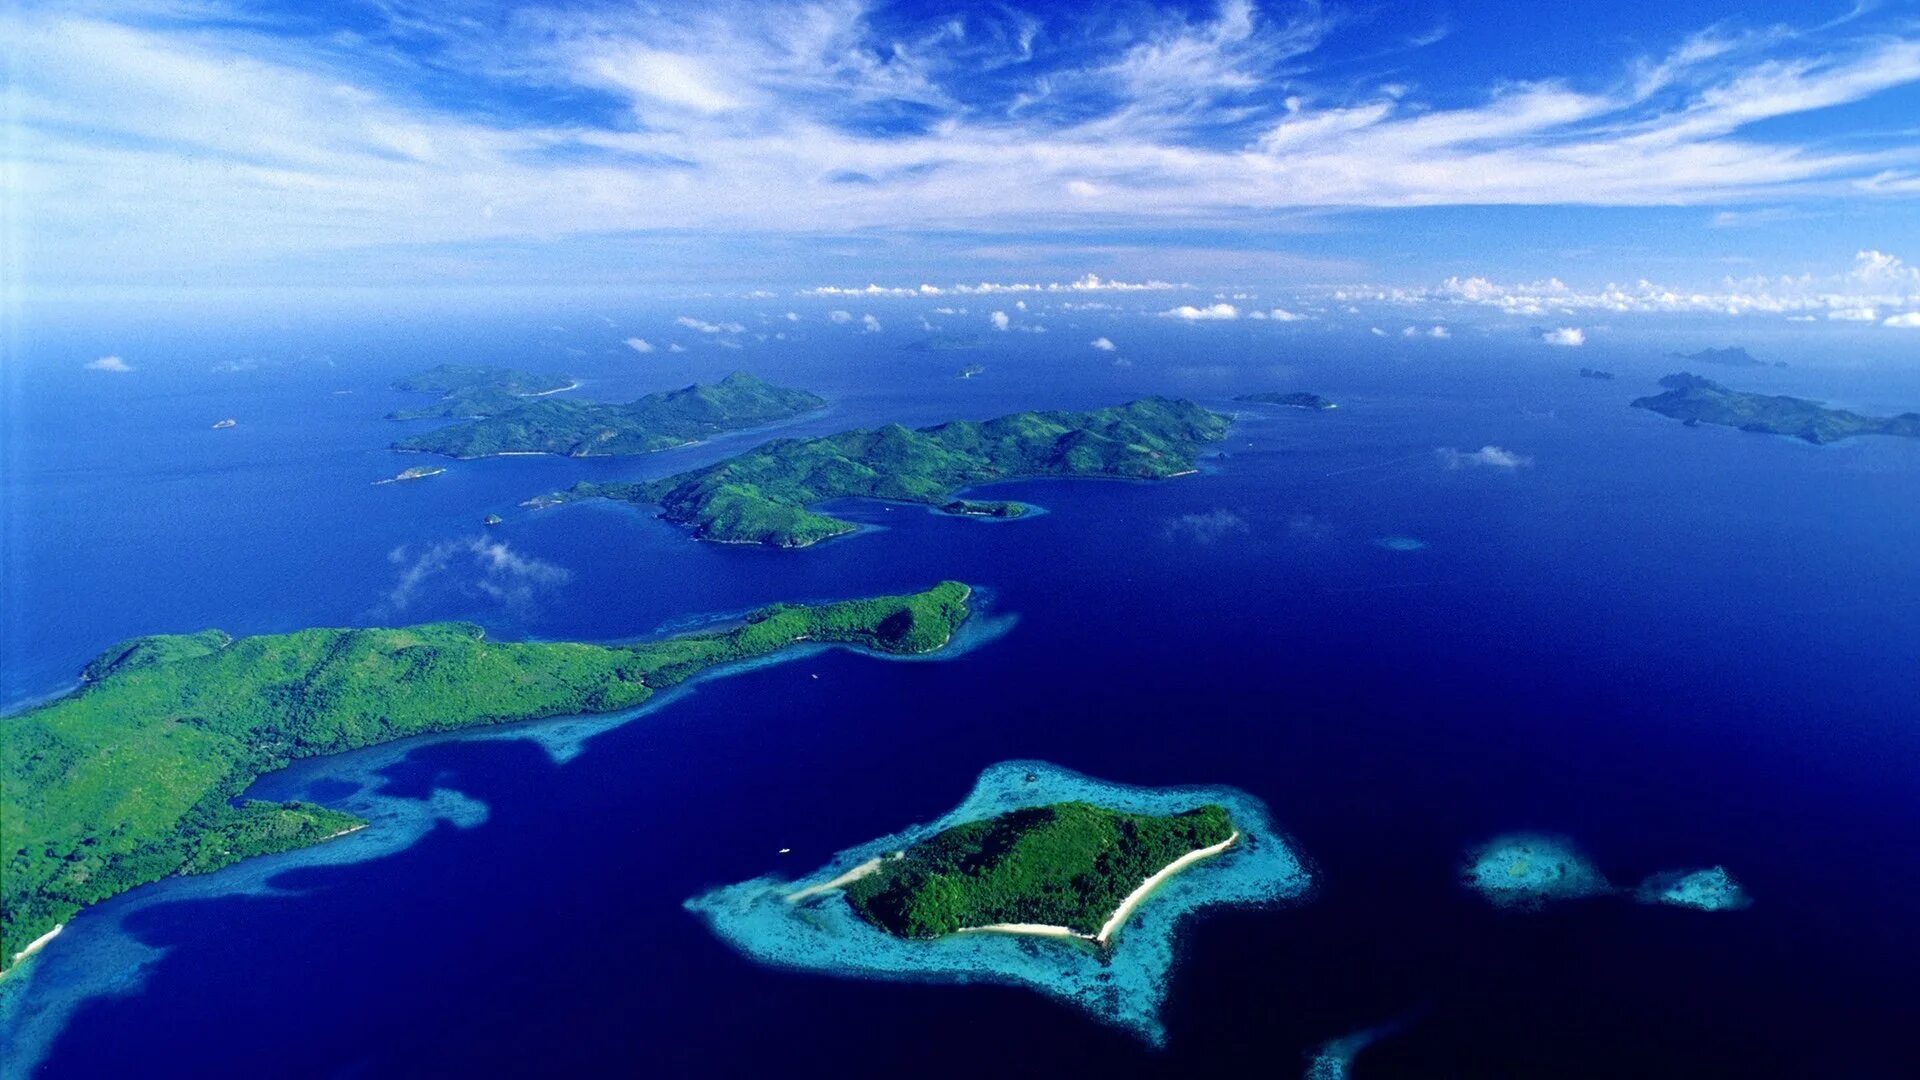 Крупнейшие острова архипелаги тихого океана. Филиппины архипелаг. Остров Палаван Филиппины. Остров Сиаси Филиппины. Архипелаг Сулу Филиппины.